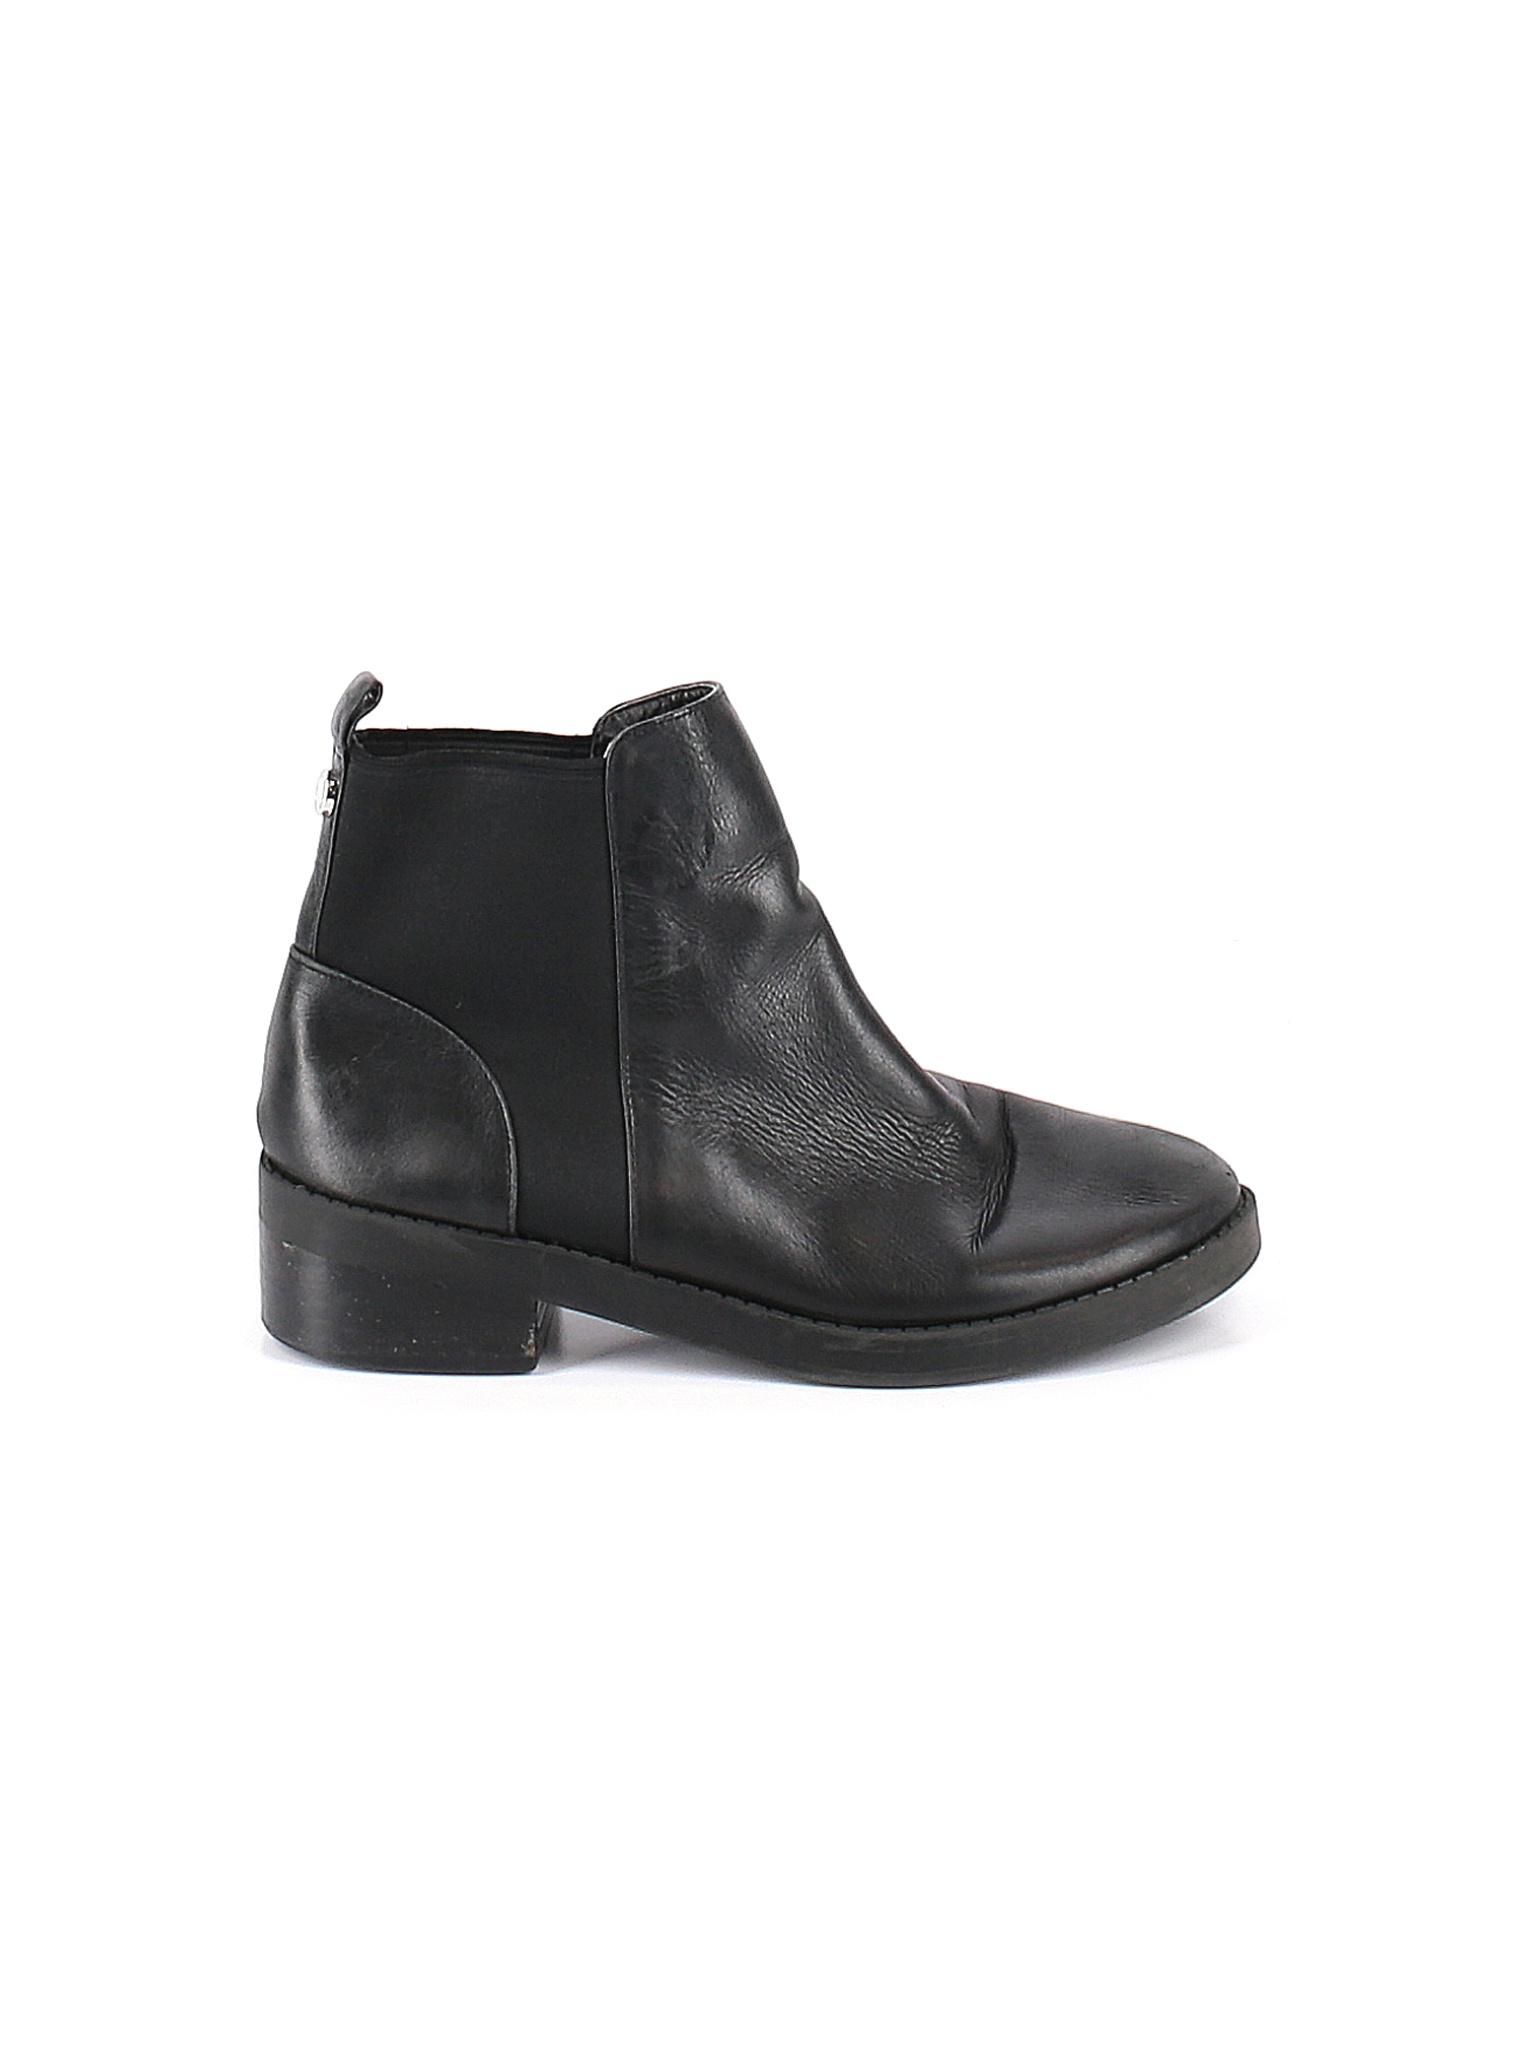 Steve Madden Women Black Ankle Boots US 8.5 | eBay